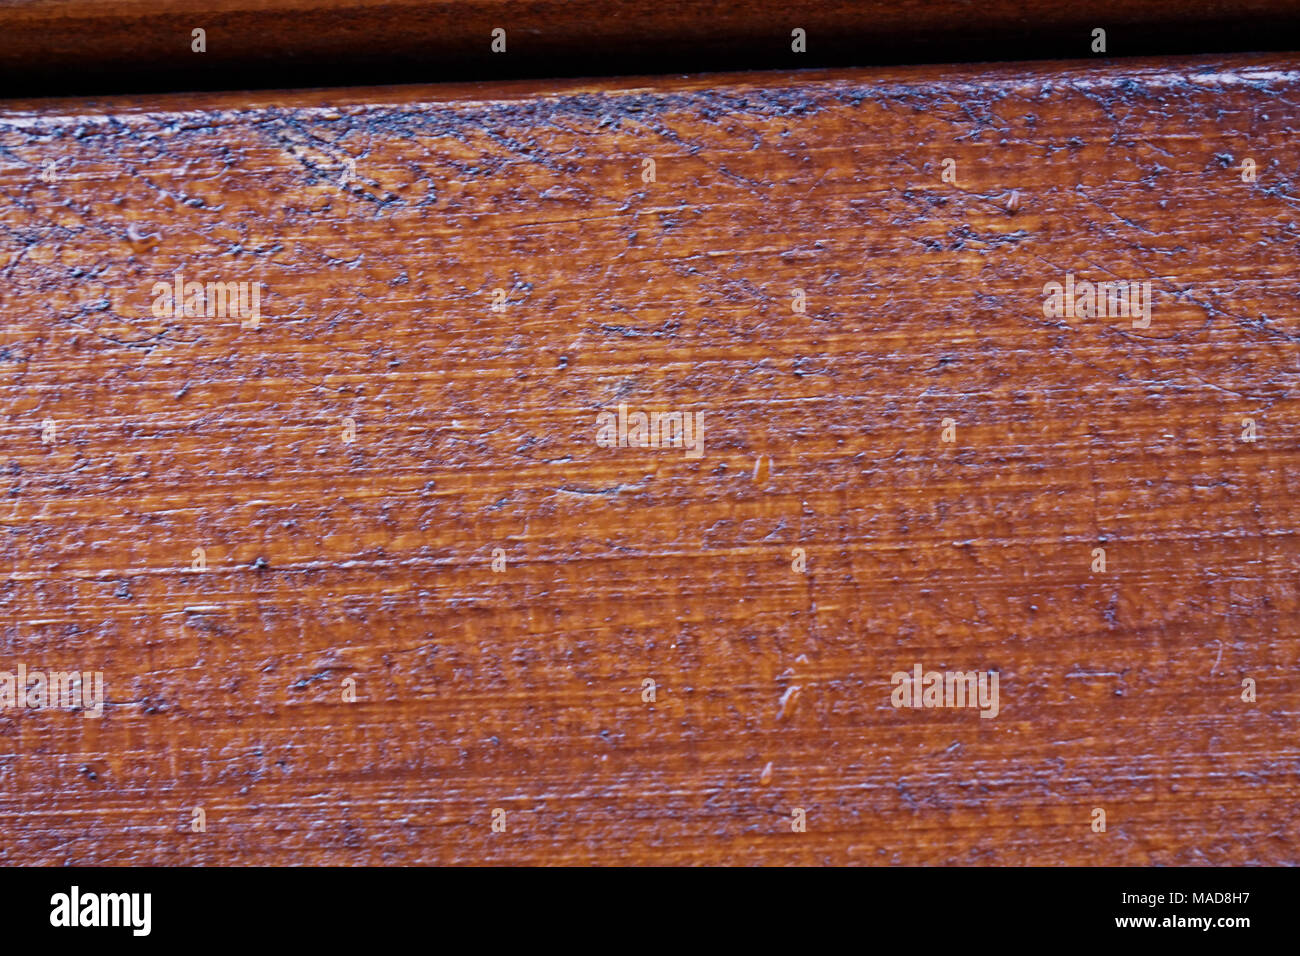 Holz Textur, braun Struktur für Hintergrund Stockfoto